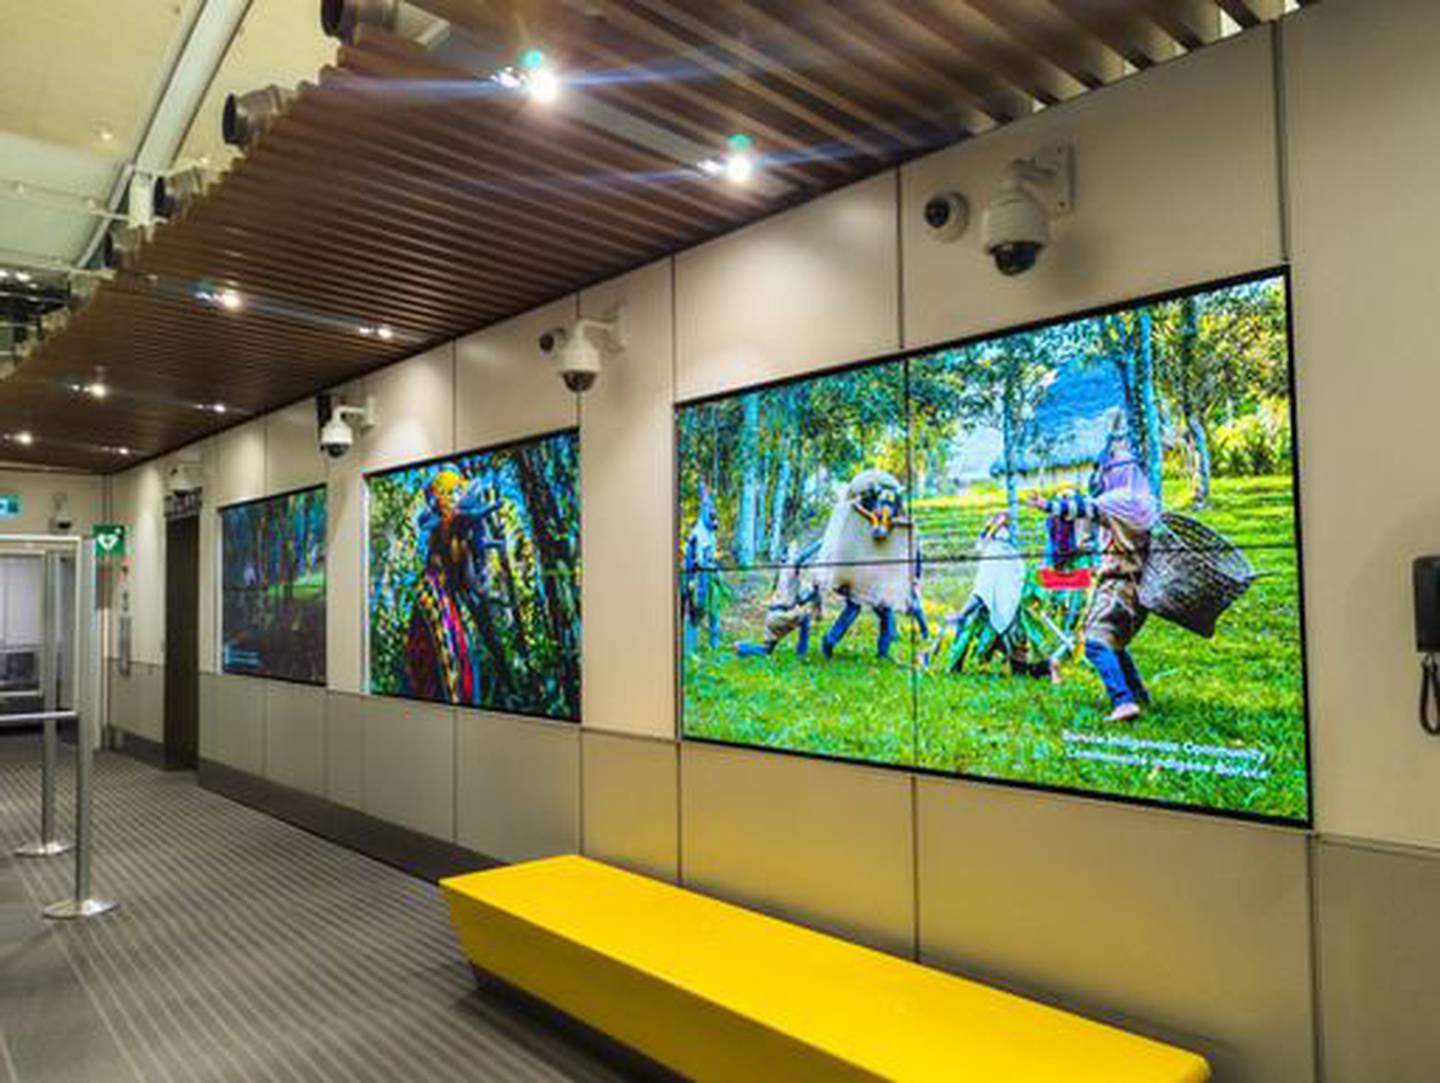 todos los pasajeros y turistas que ingresen a Canadá por el Aeropuerto Toronto Pearson podrán deleitarse con la instalación de arte  “Take Your Seat”, mientras ven biodiversidad y los atractivos turísticos de Costa Rica en muestra de fotografías. Toronto.